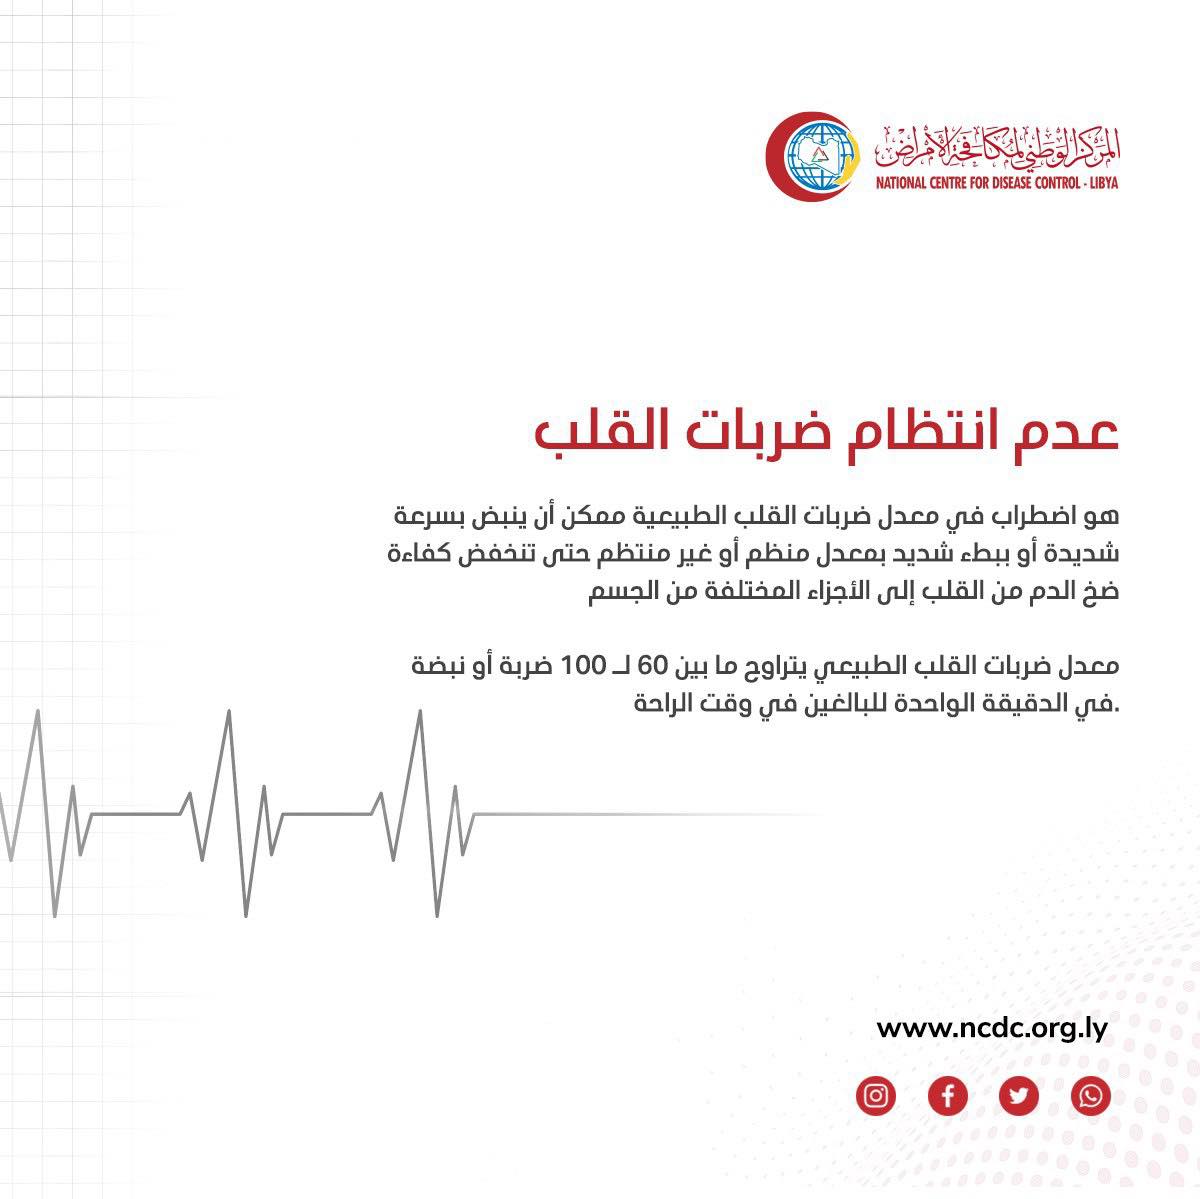 نشرة علمية توعوية عن أسباب عدم انتظام ضربات القلب يُصدرها المركز الوطني لمكافحة الأمراض